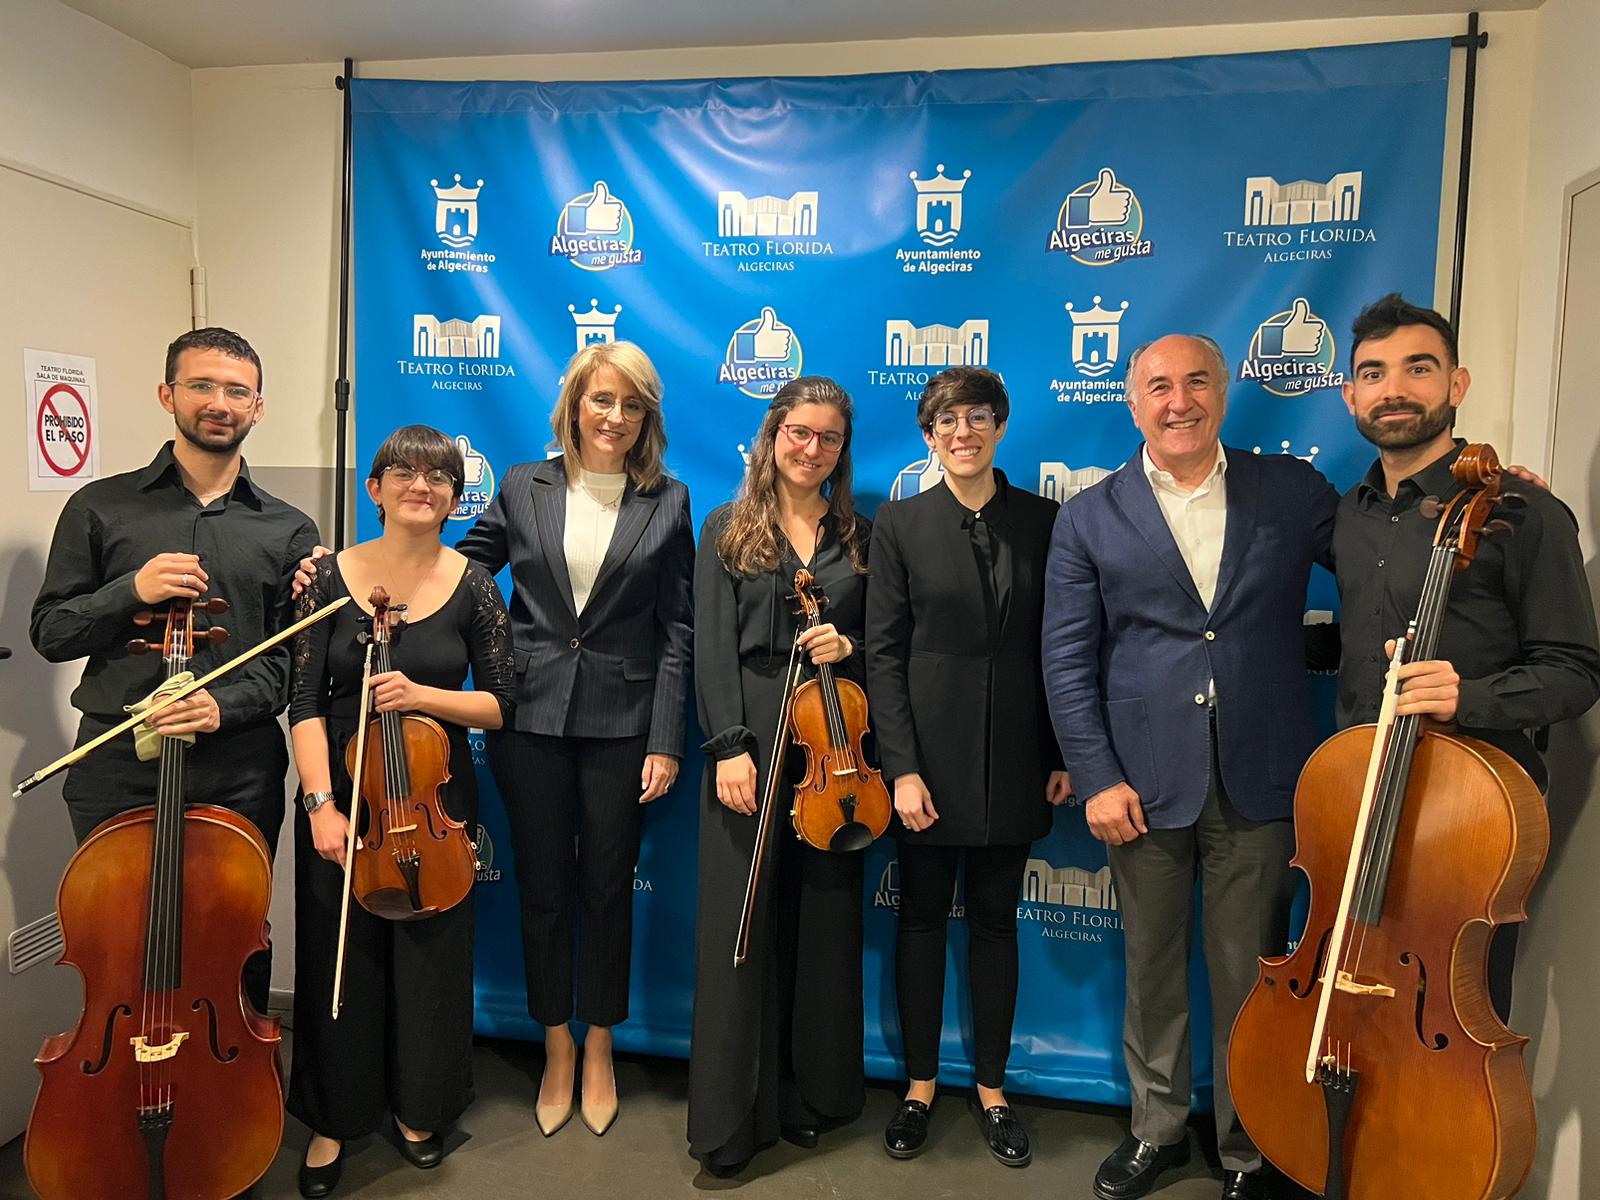 El Florida acoge el concierto inaugural de Thalassa Orchestra, la primera orquesta profesional de la comarca